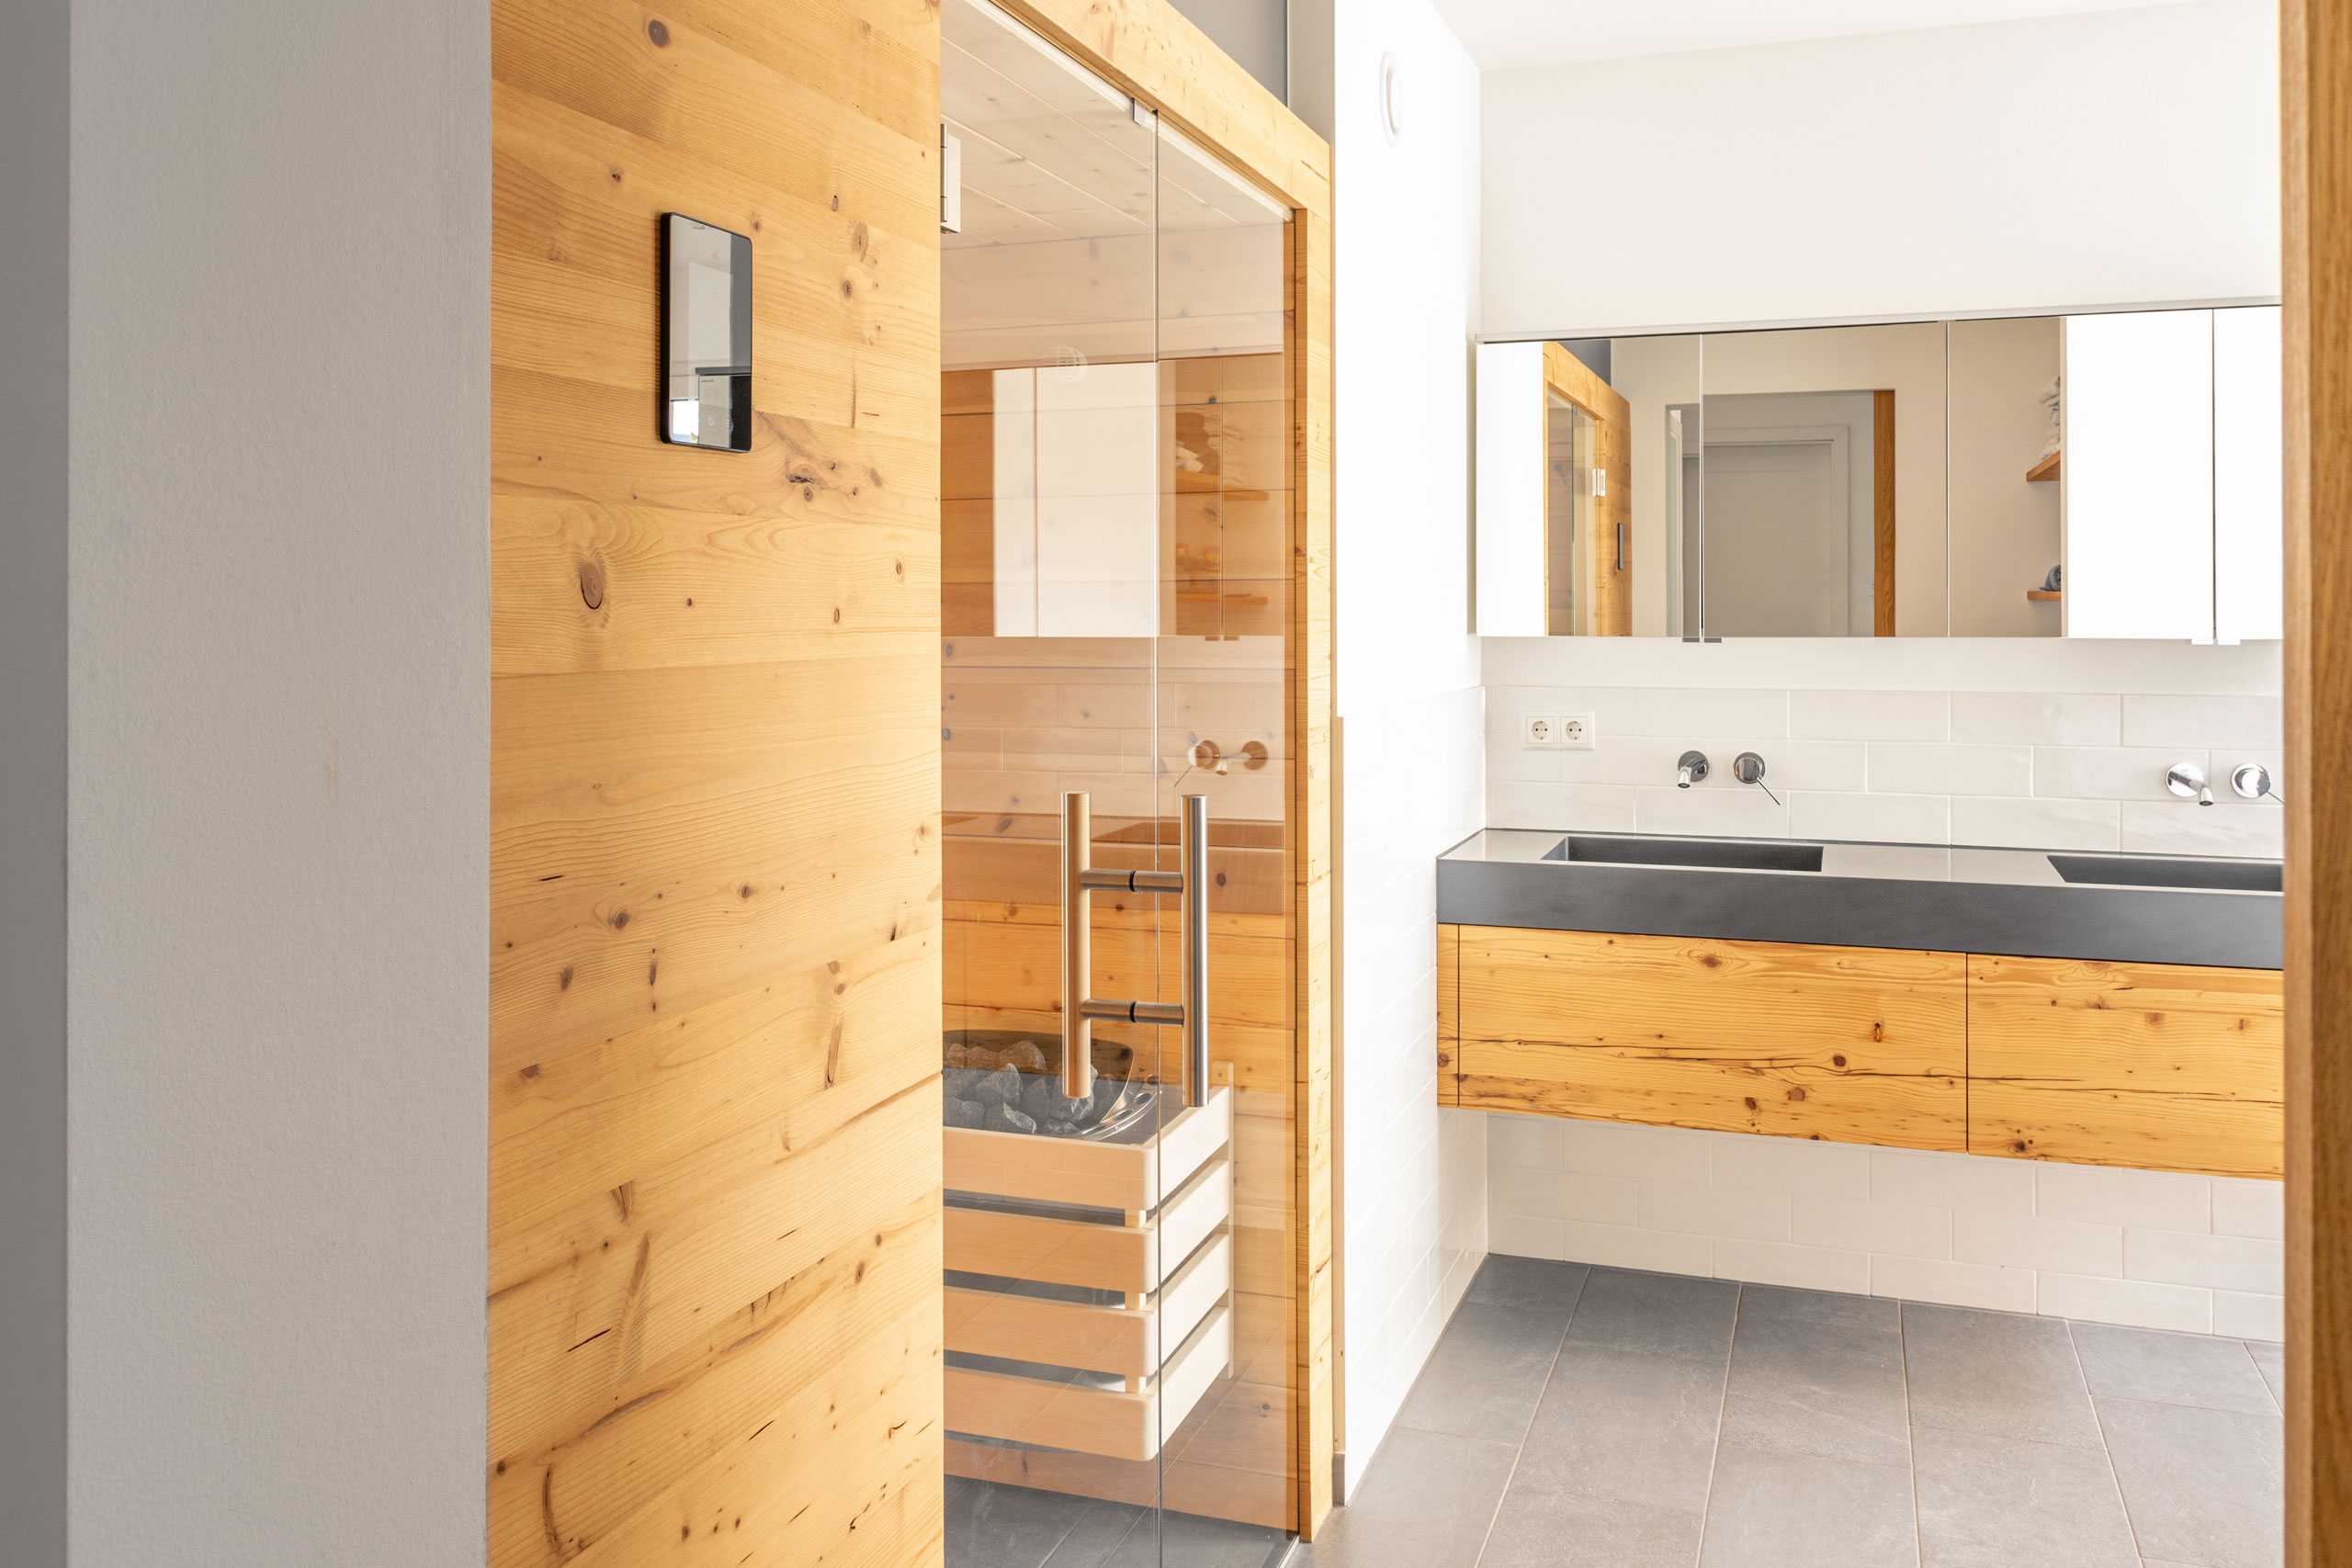 Einblick in ein Badezimmer mit Badmöbel und Sauna mit Zirbenholz Fassade Front mit schwebendem Unterschrank heller Raum Schreinerei Zimmerei Tischlerei